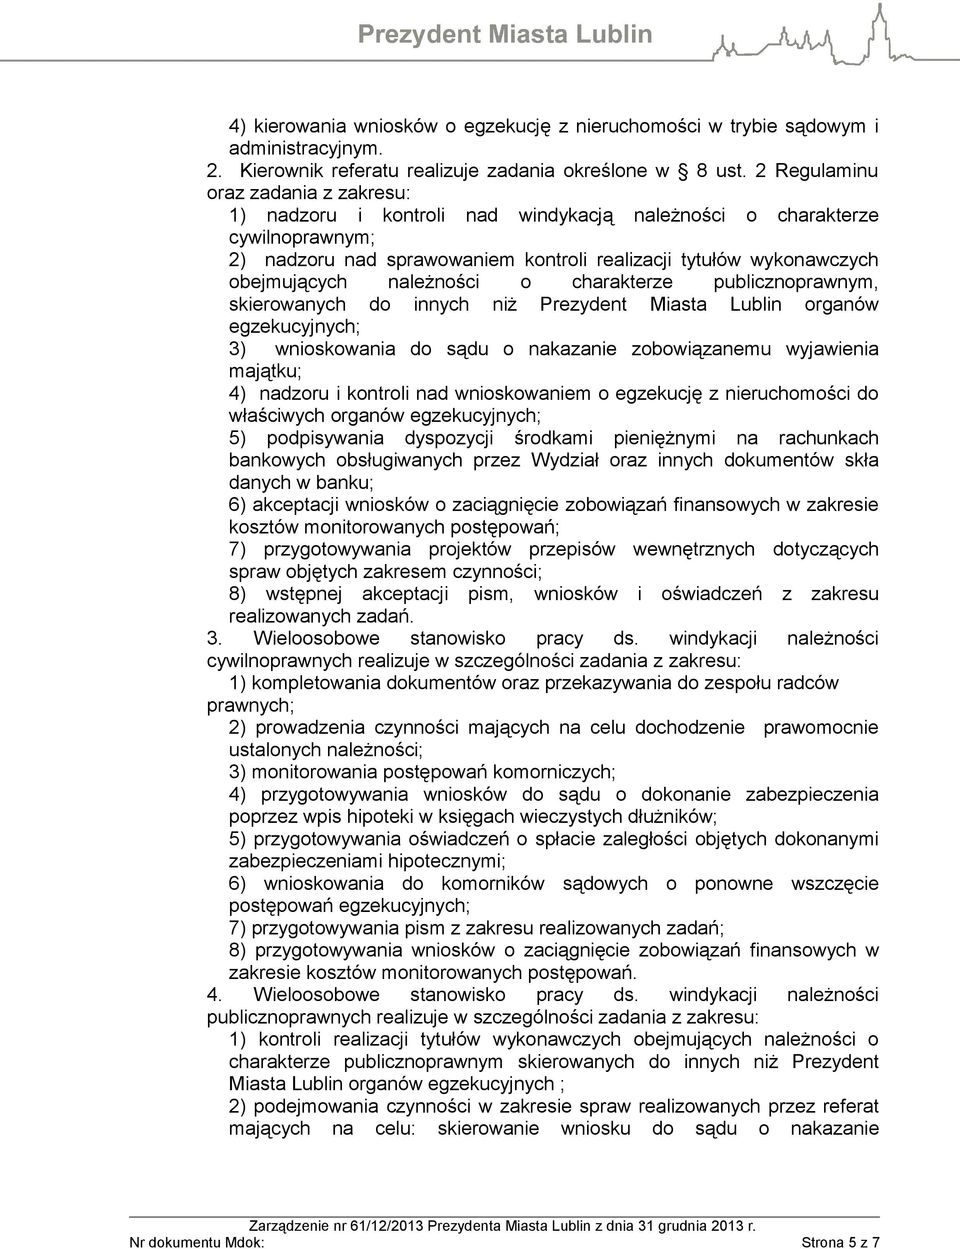 należności o charakterze publicznoprawnym, skierowanych do innych niż Prezydent Miasta Lublin organów egzekucyjnych; 3) wnioskowania do sądu o nakazanie zobowiązanemu wyjawienia majątku; 4) nadzoru i